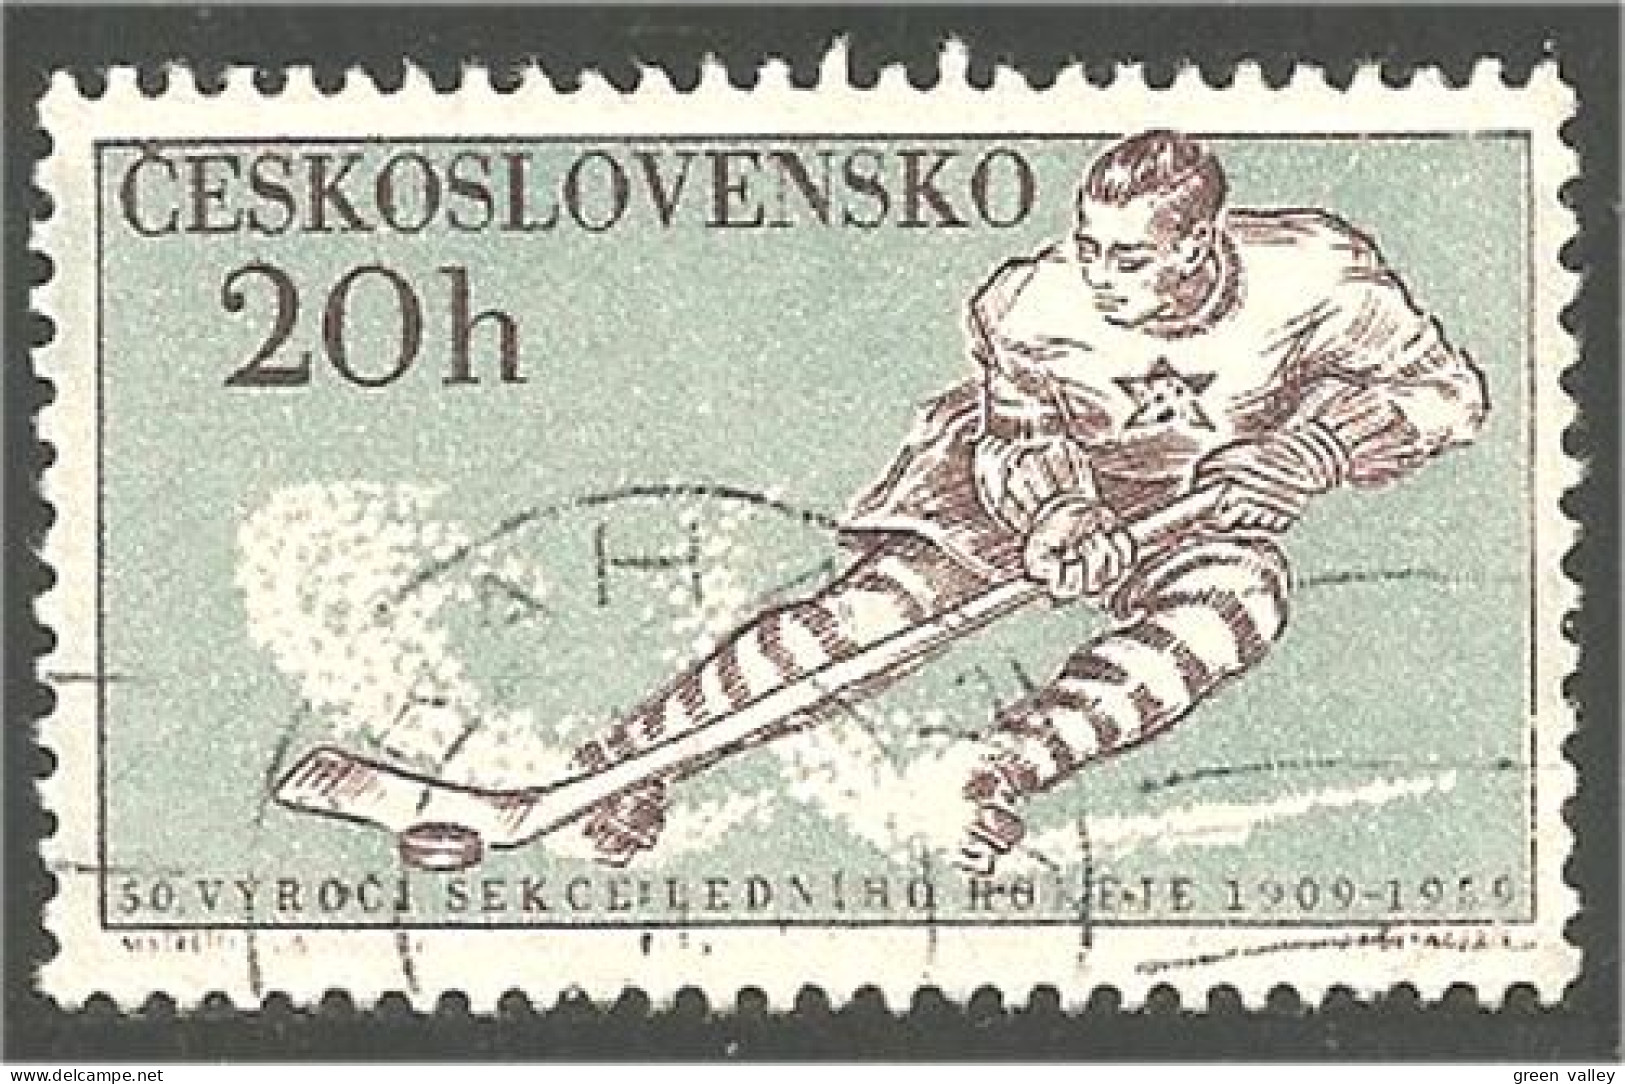 290 Czechoslovakia Ice Hockey Glace Eishockey (CZE-220) - Eishockey